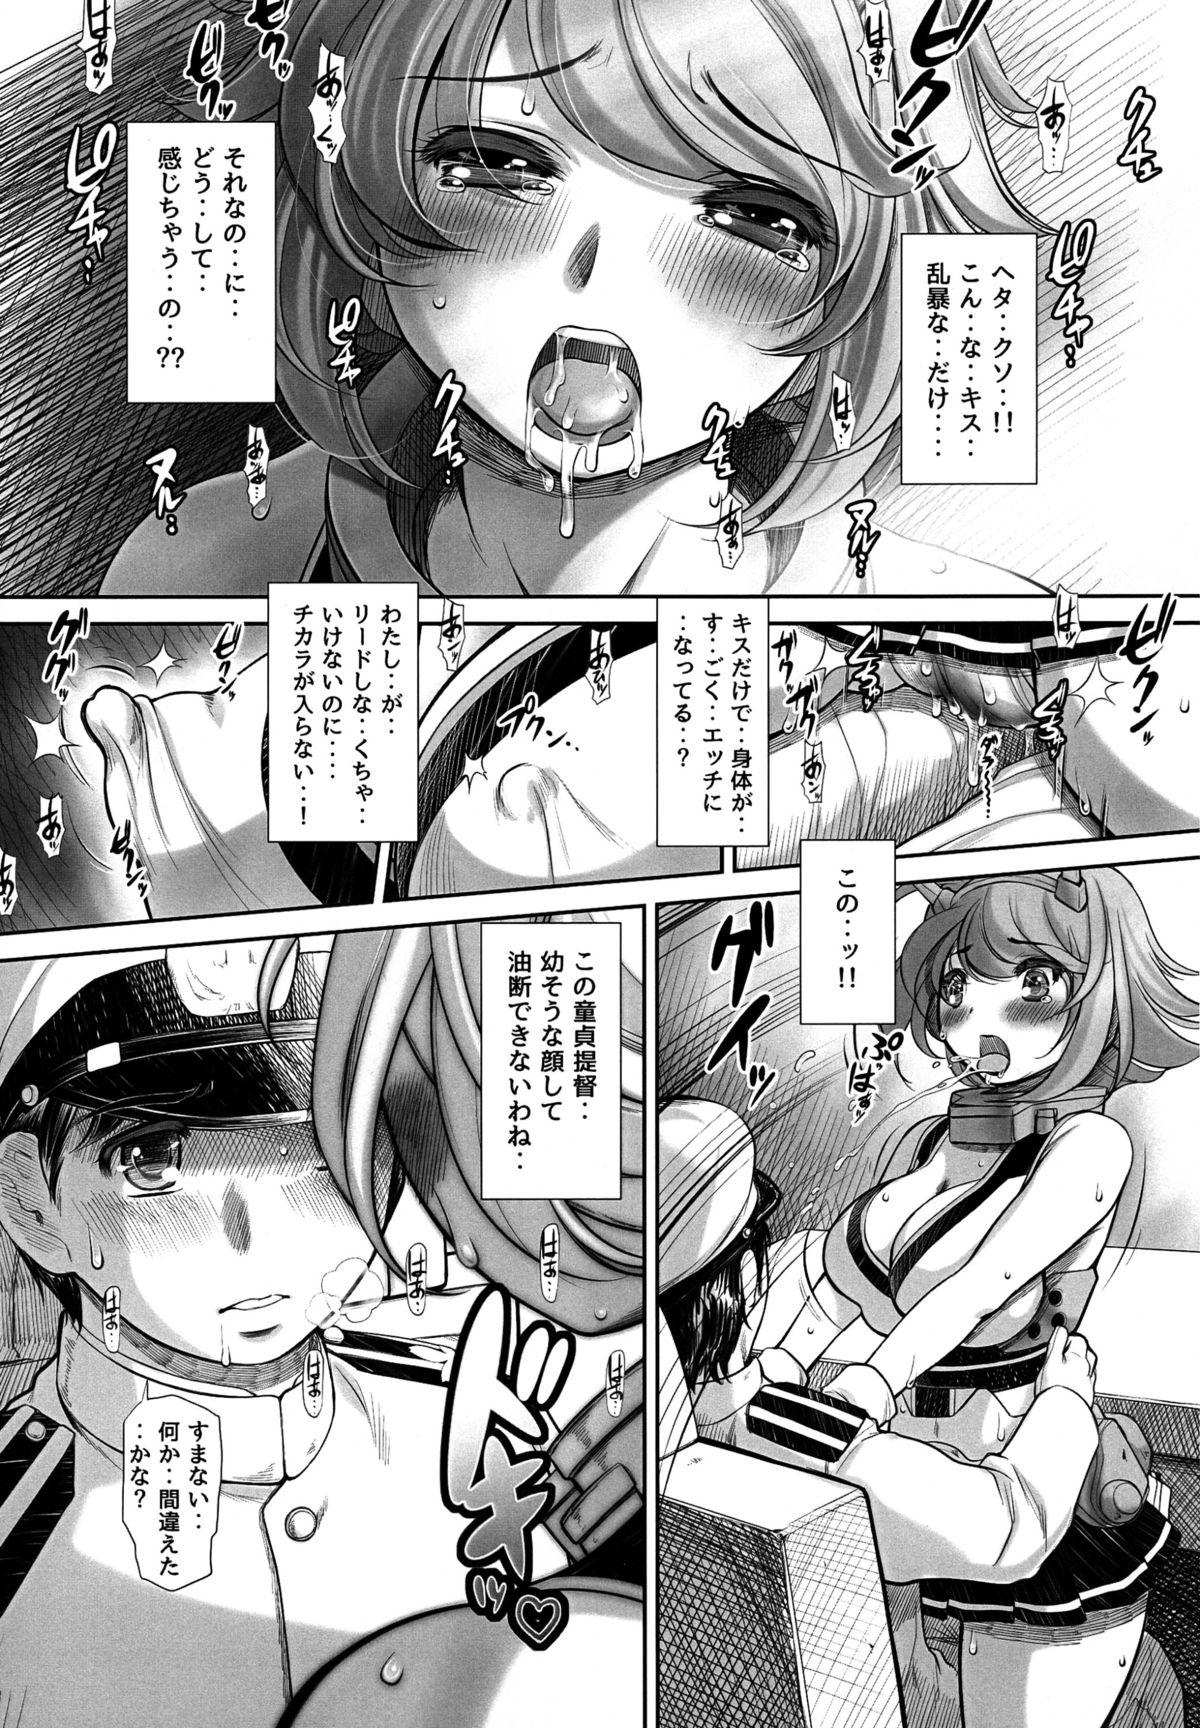 Butt Fuck Doutei ga Yurusareru no wa Shousa made dayo ne? - Kantai collection Sucking Dicks - Page 9